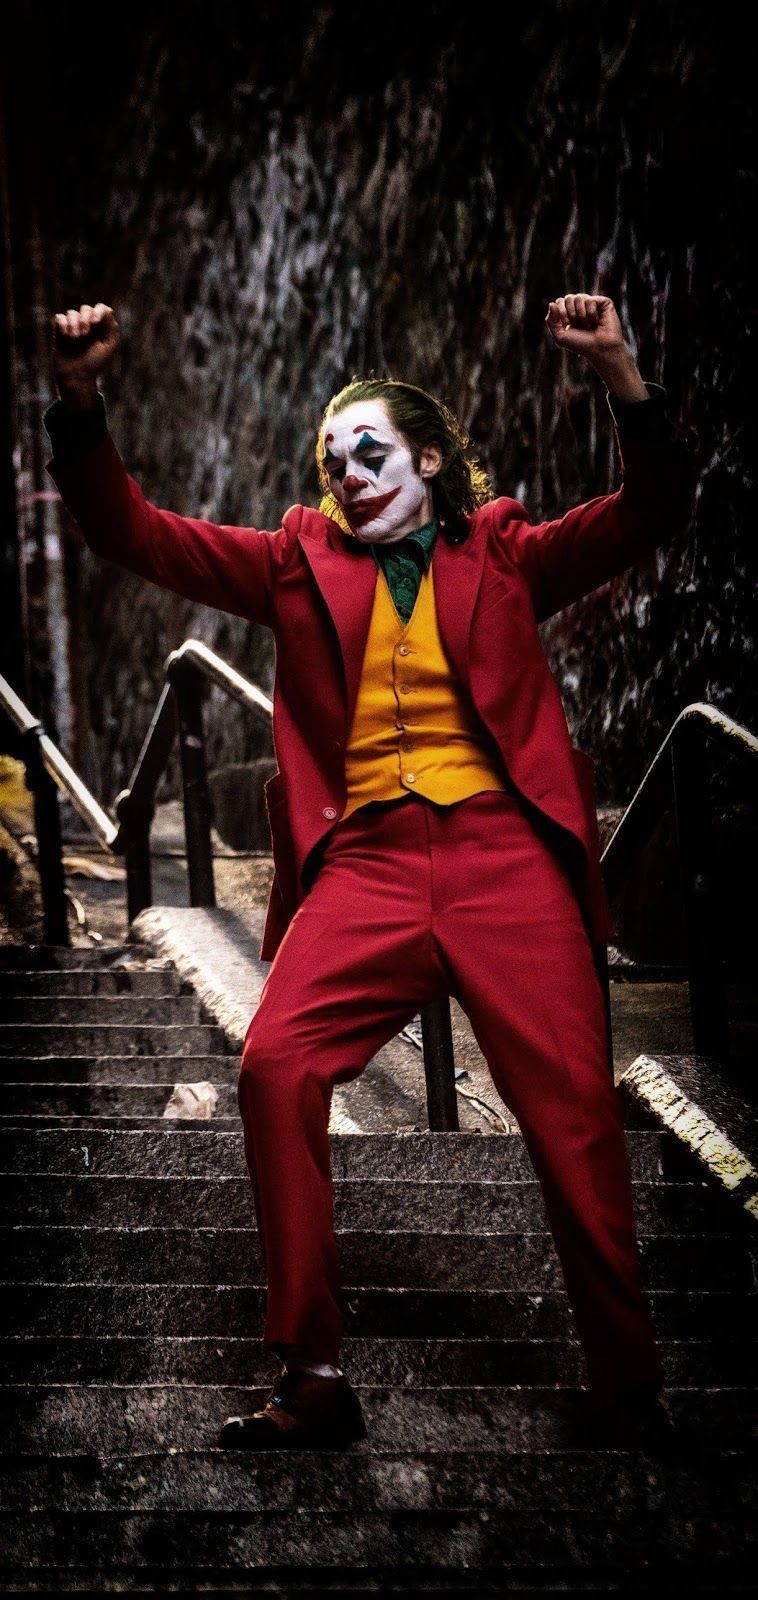 Cùng khám phá những hình nền Amoled đầy tựa phim nổi tiếng Joker 2019, mang đến cho người dùng một trải nghiệm tuyệt vời và đầy sáng tạo. Sự kết hợp tuyệt vời giữa màu đen và màu đỏ đã thực sự tạo nên sự cuốn hút đẳng cấp cho những người dùng thích sự mới lạ.